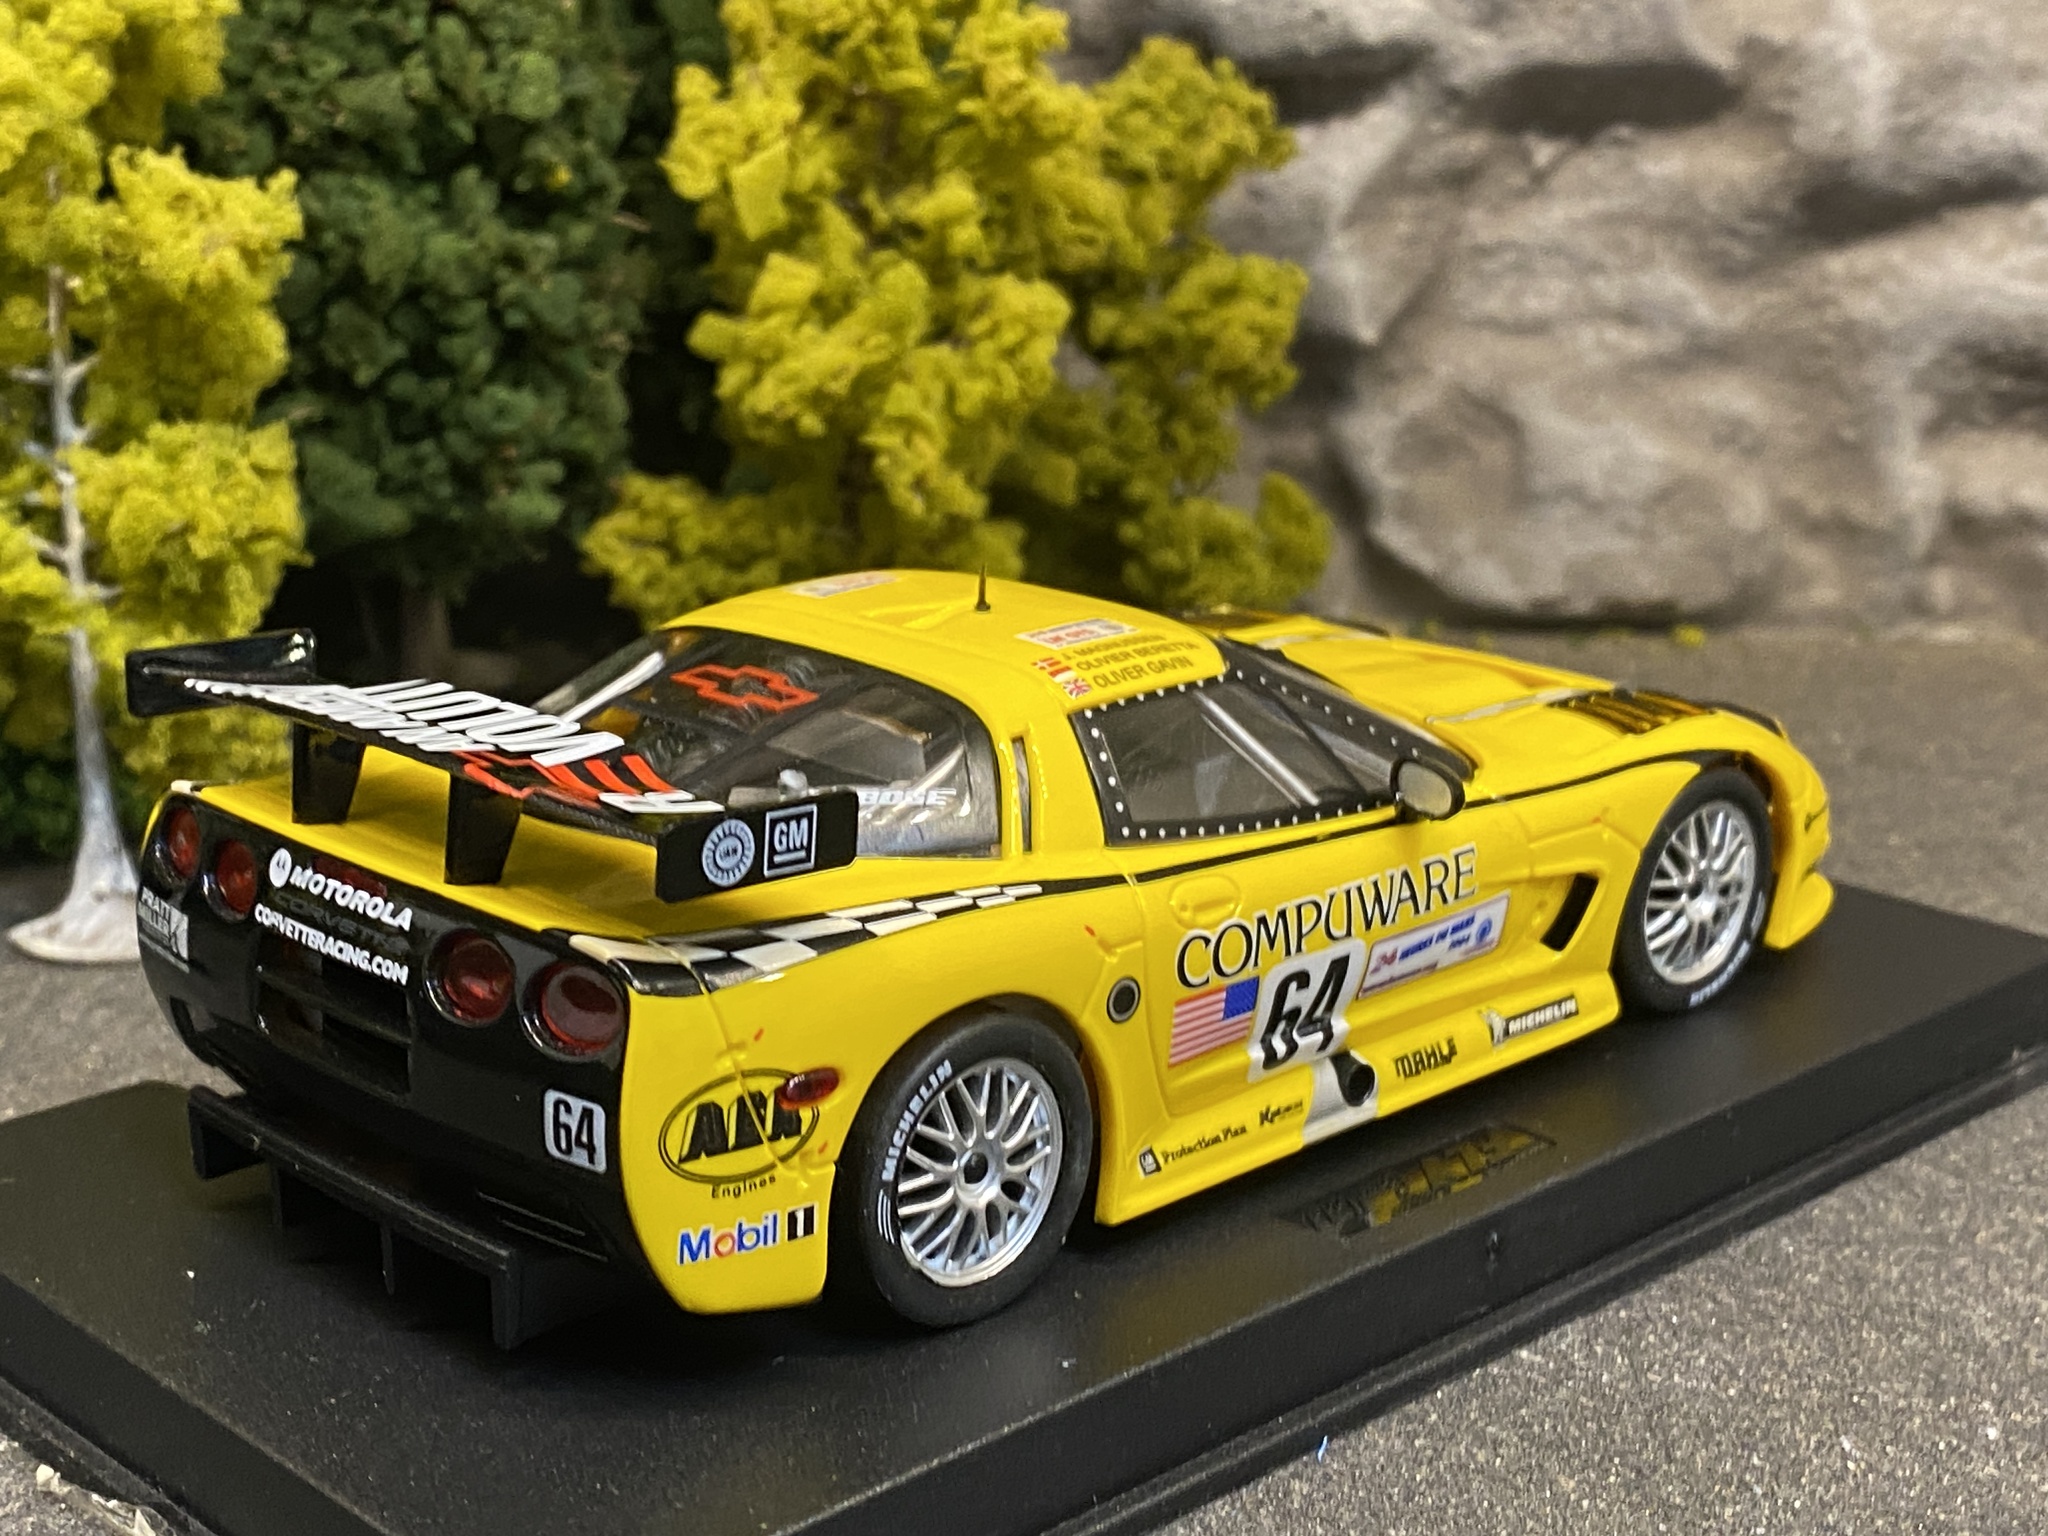 Scale 1/32 Analogue FLY slotcar: Chevrolet Corvette C5R, #64, Le Mans 2004